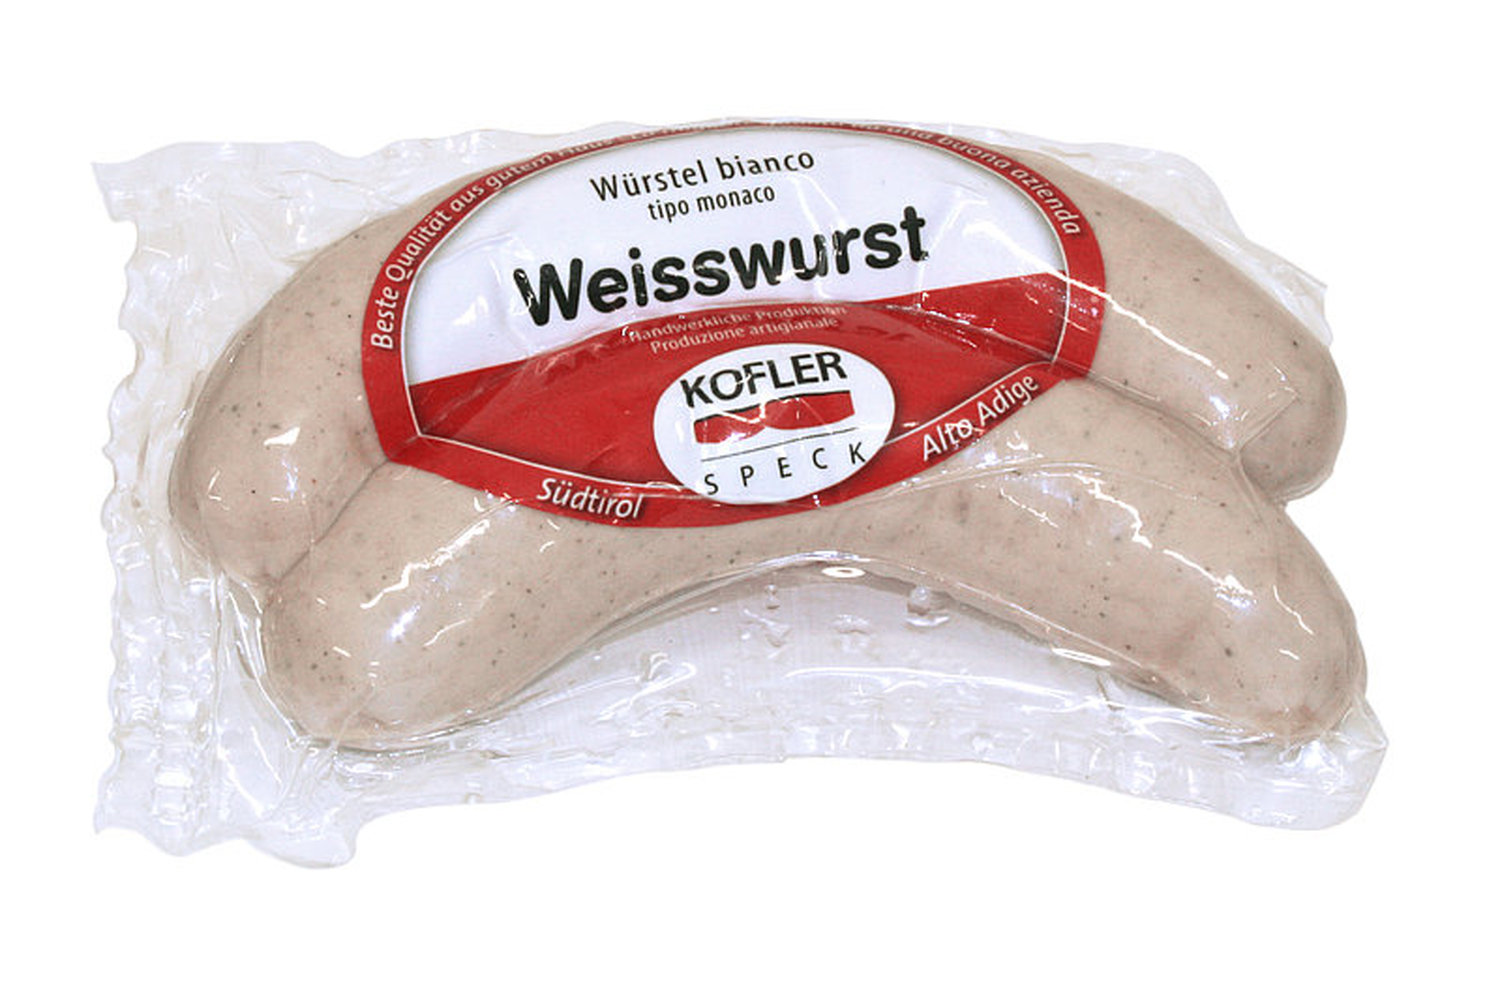 Würstel Weisswurst Monaco 4 pc vac. app. 350 gr. - Kofler Speck - H&H Shop